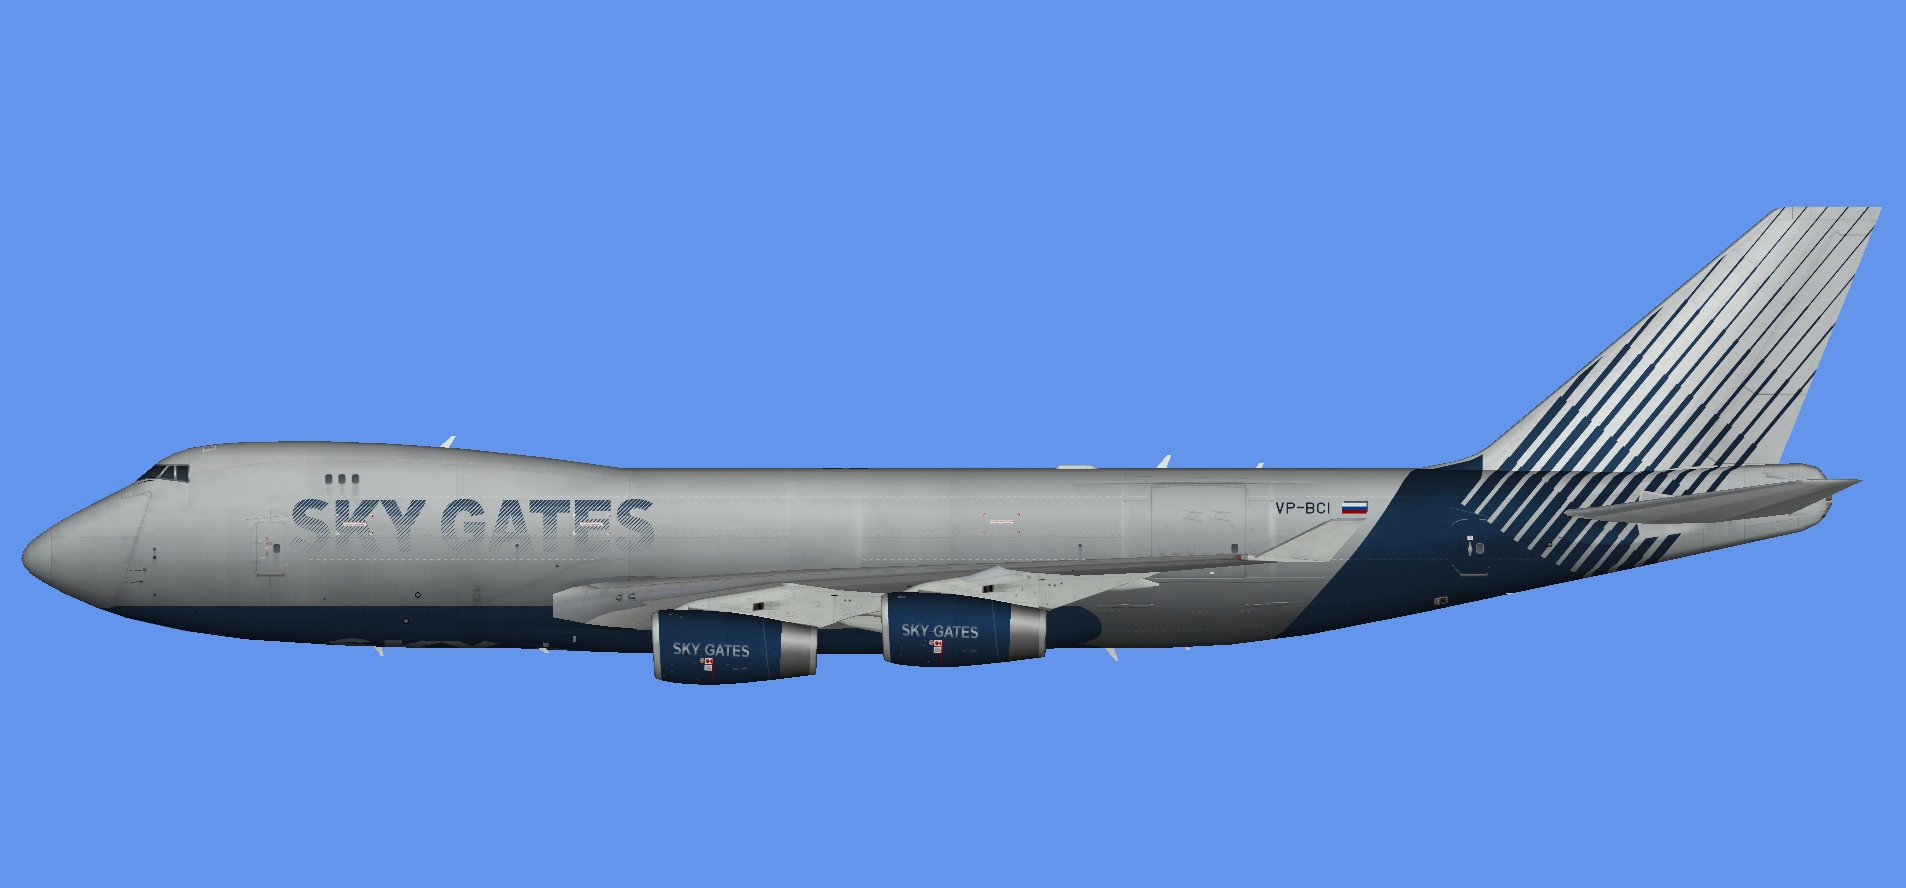 Sky Gates Boeing 747-400F